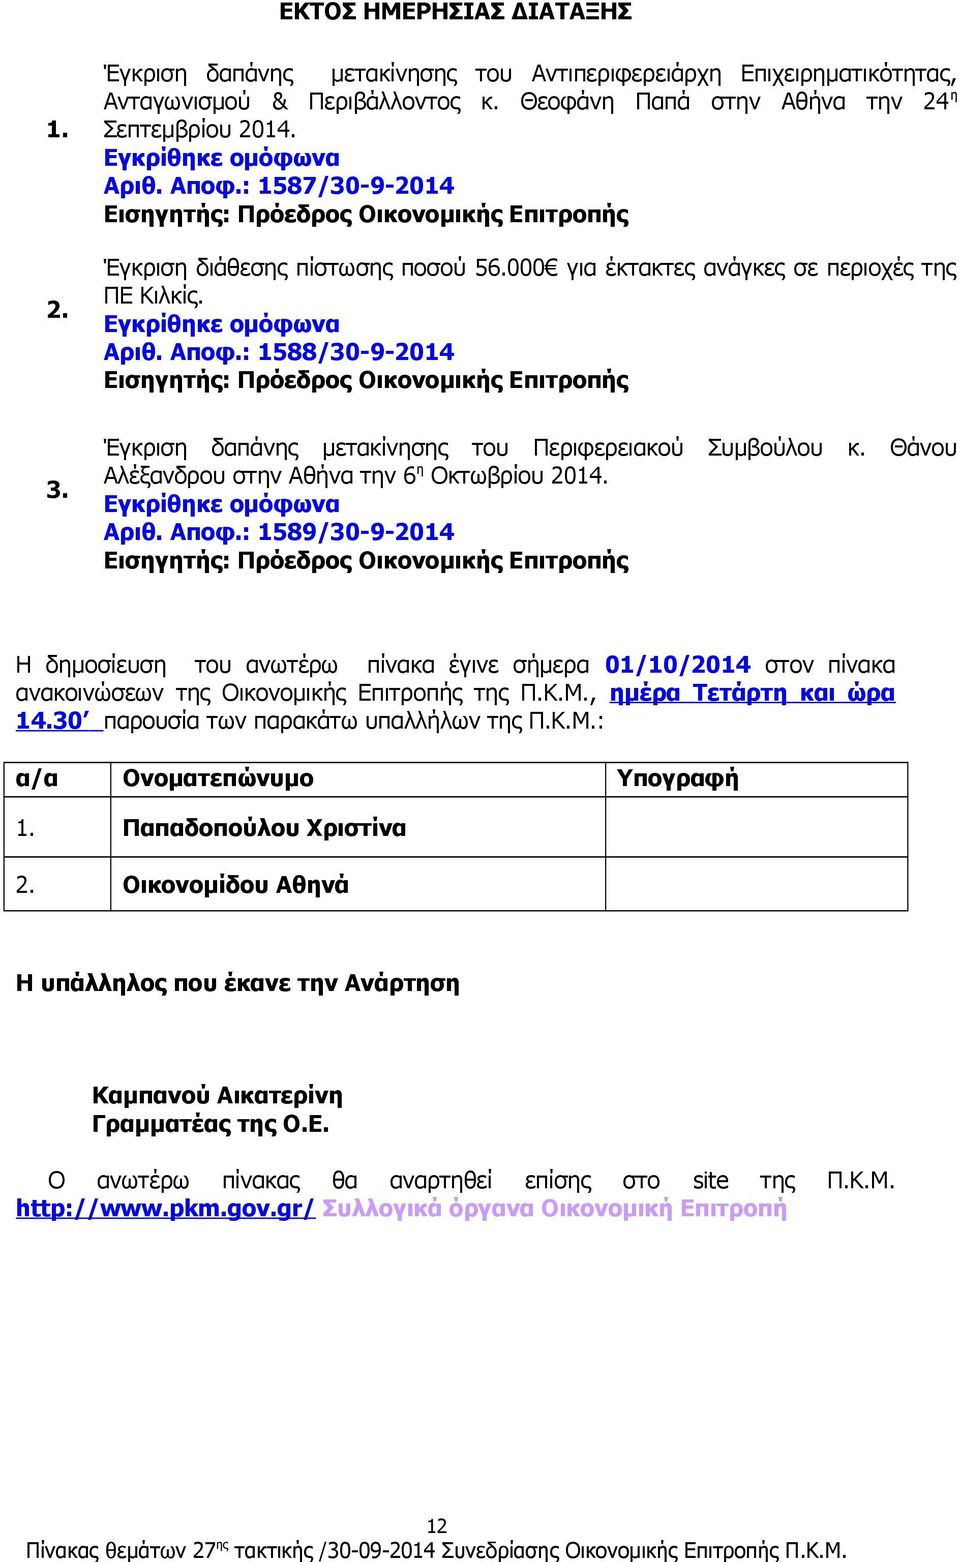 Θάνου Αλέξανδρου στην Αθήνα την 6 η Οκτωβρίου 2014. Αριθ. Αποφ.: 1589/30-9-2014 Η δημοσίευση του ανωτέρω πίνακα έγινε σήμερα 01/10/2014 στον πίνακα ανακοινώσεων της Οικονομικής Επιτροπής της Π.Κ.Μ.